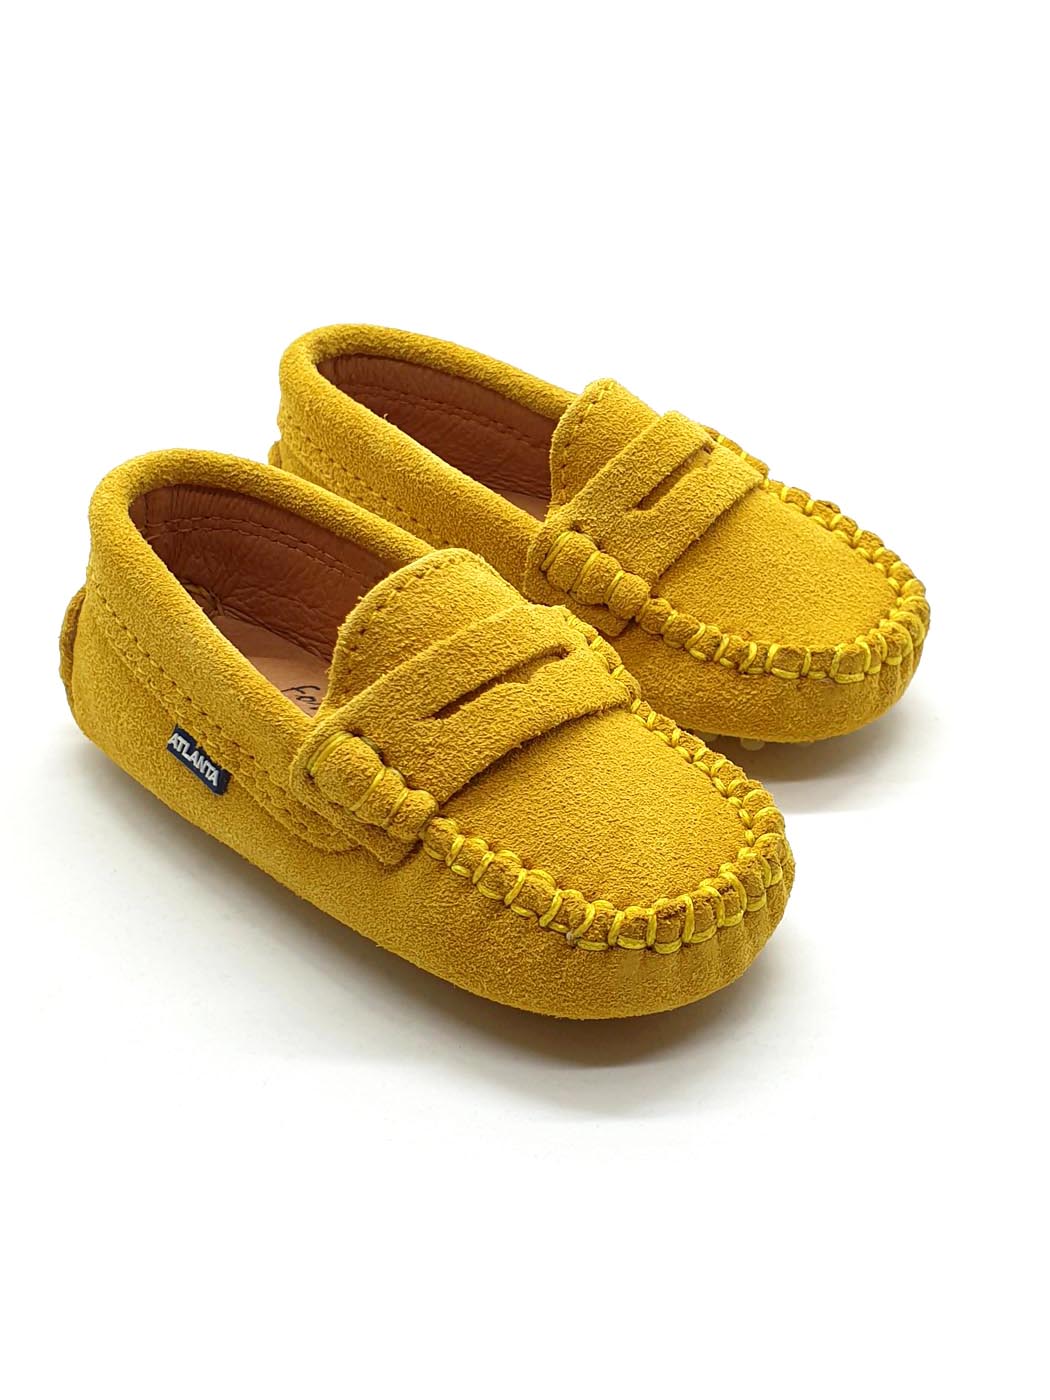 Atlanta Mocassin-Baby Shoes Moccasins Yellow-032B013